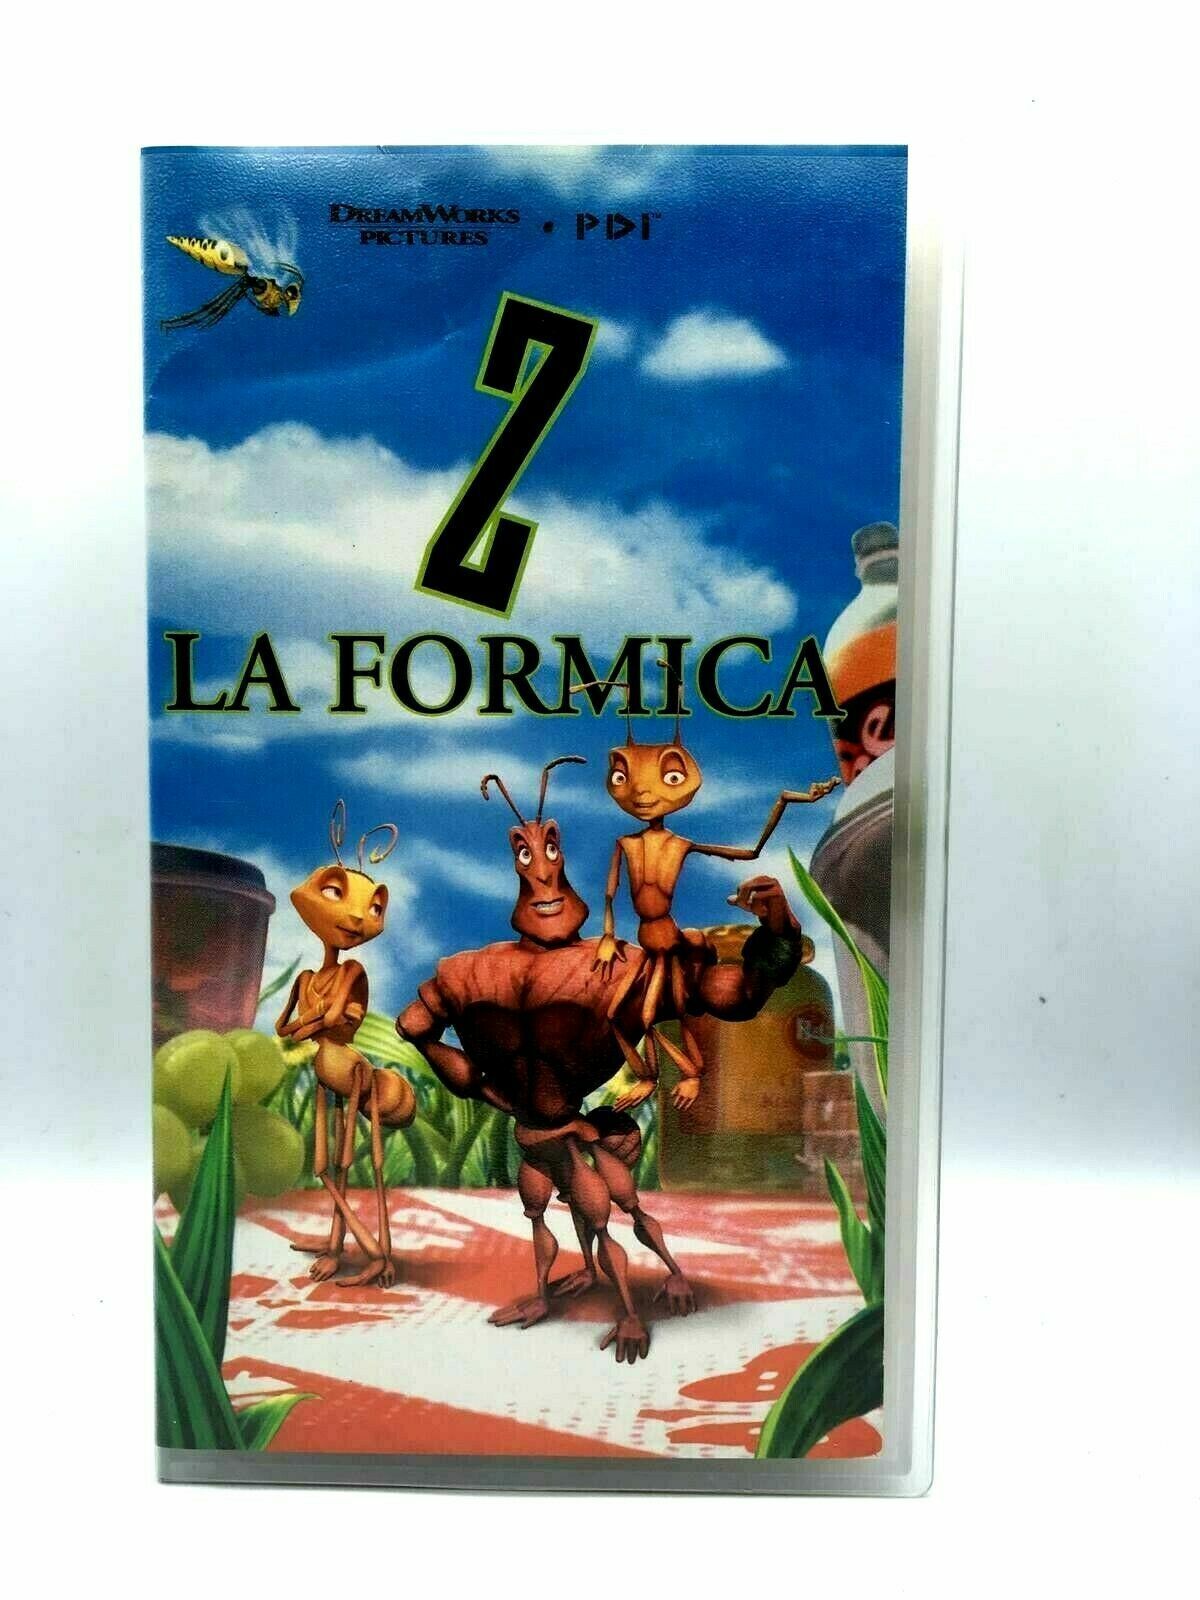 Z La Formica -Vhs -1998-tv sorrisi e canzoni -F